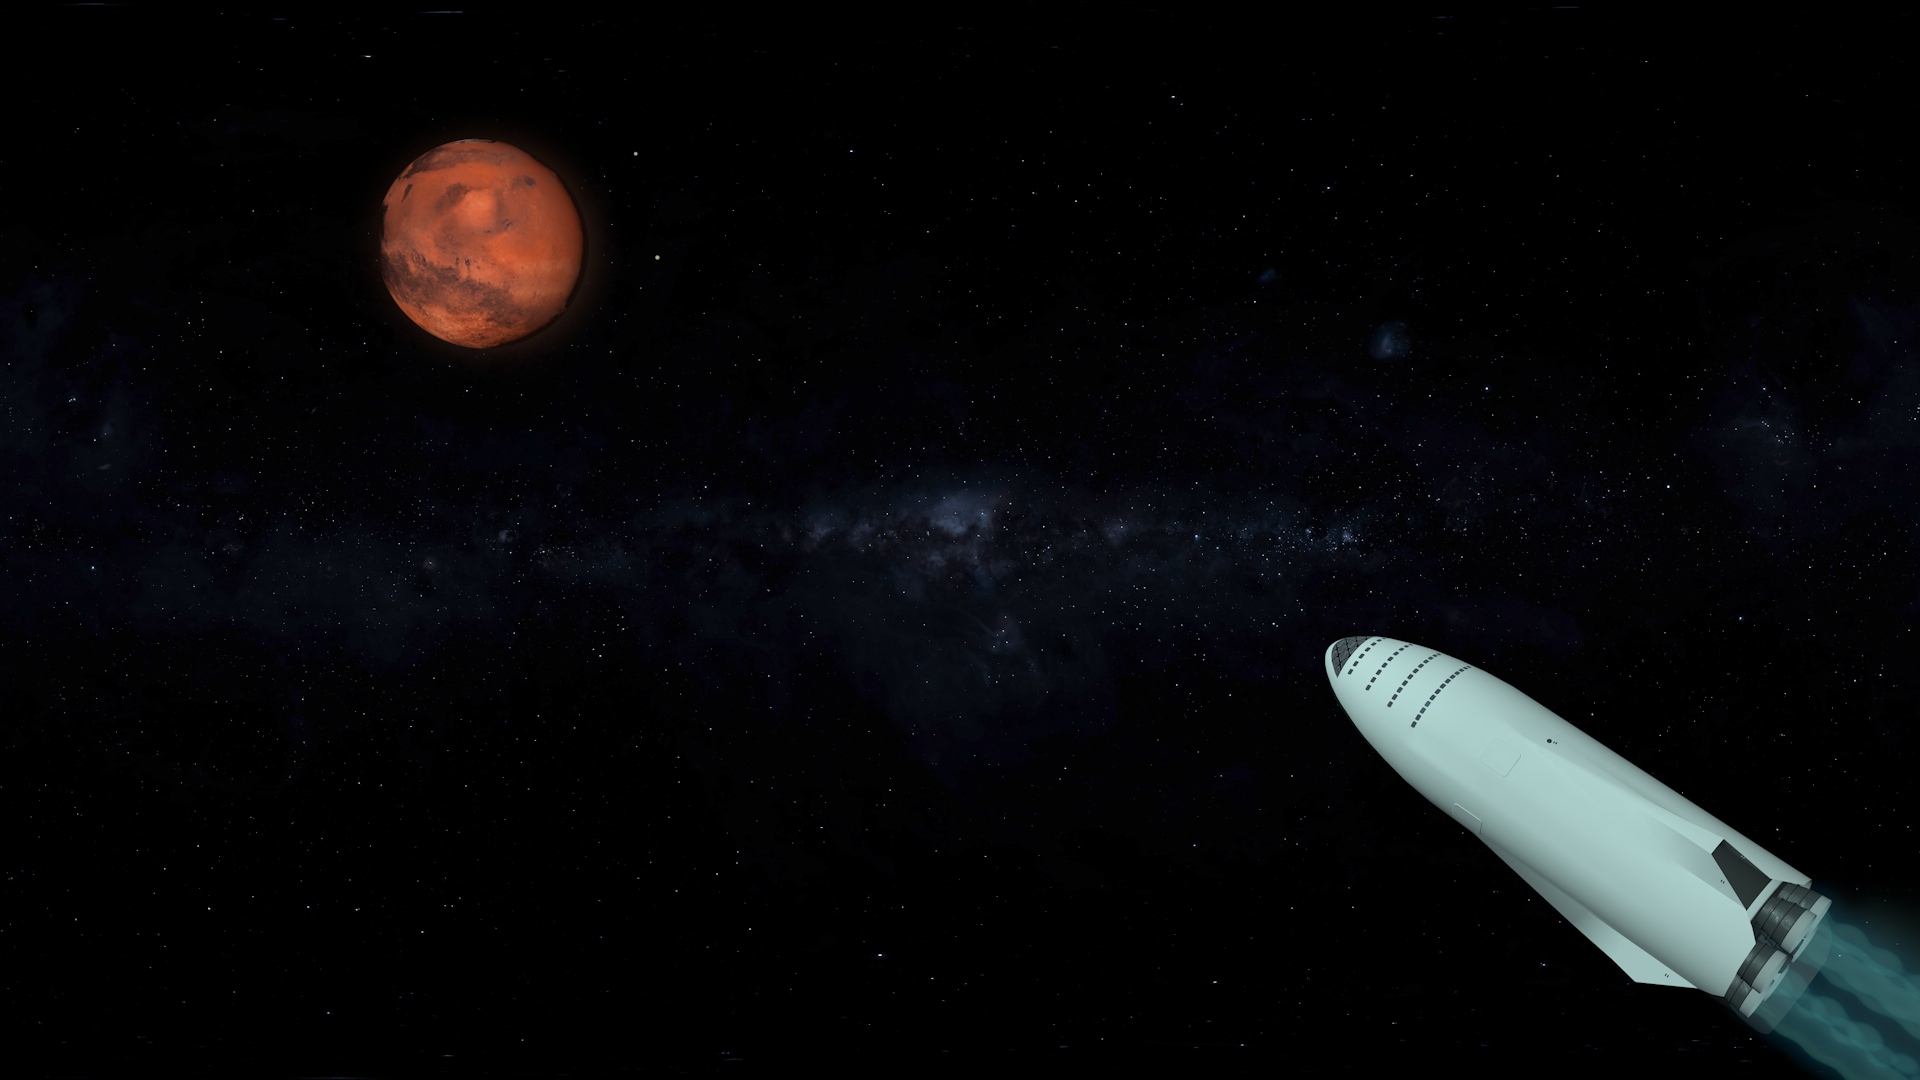 imagen de SpaceX Big Falcon Rocket en Cinema 4d maxwell render